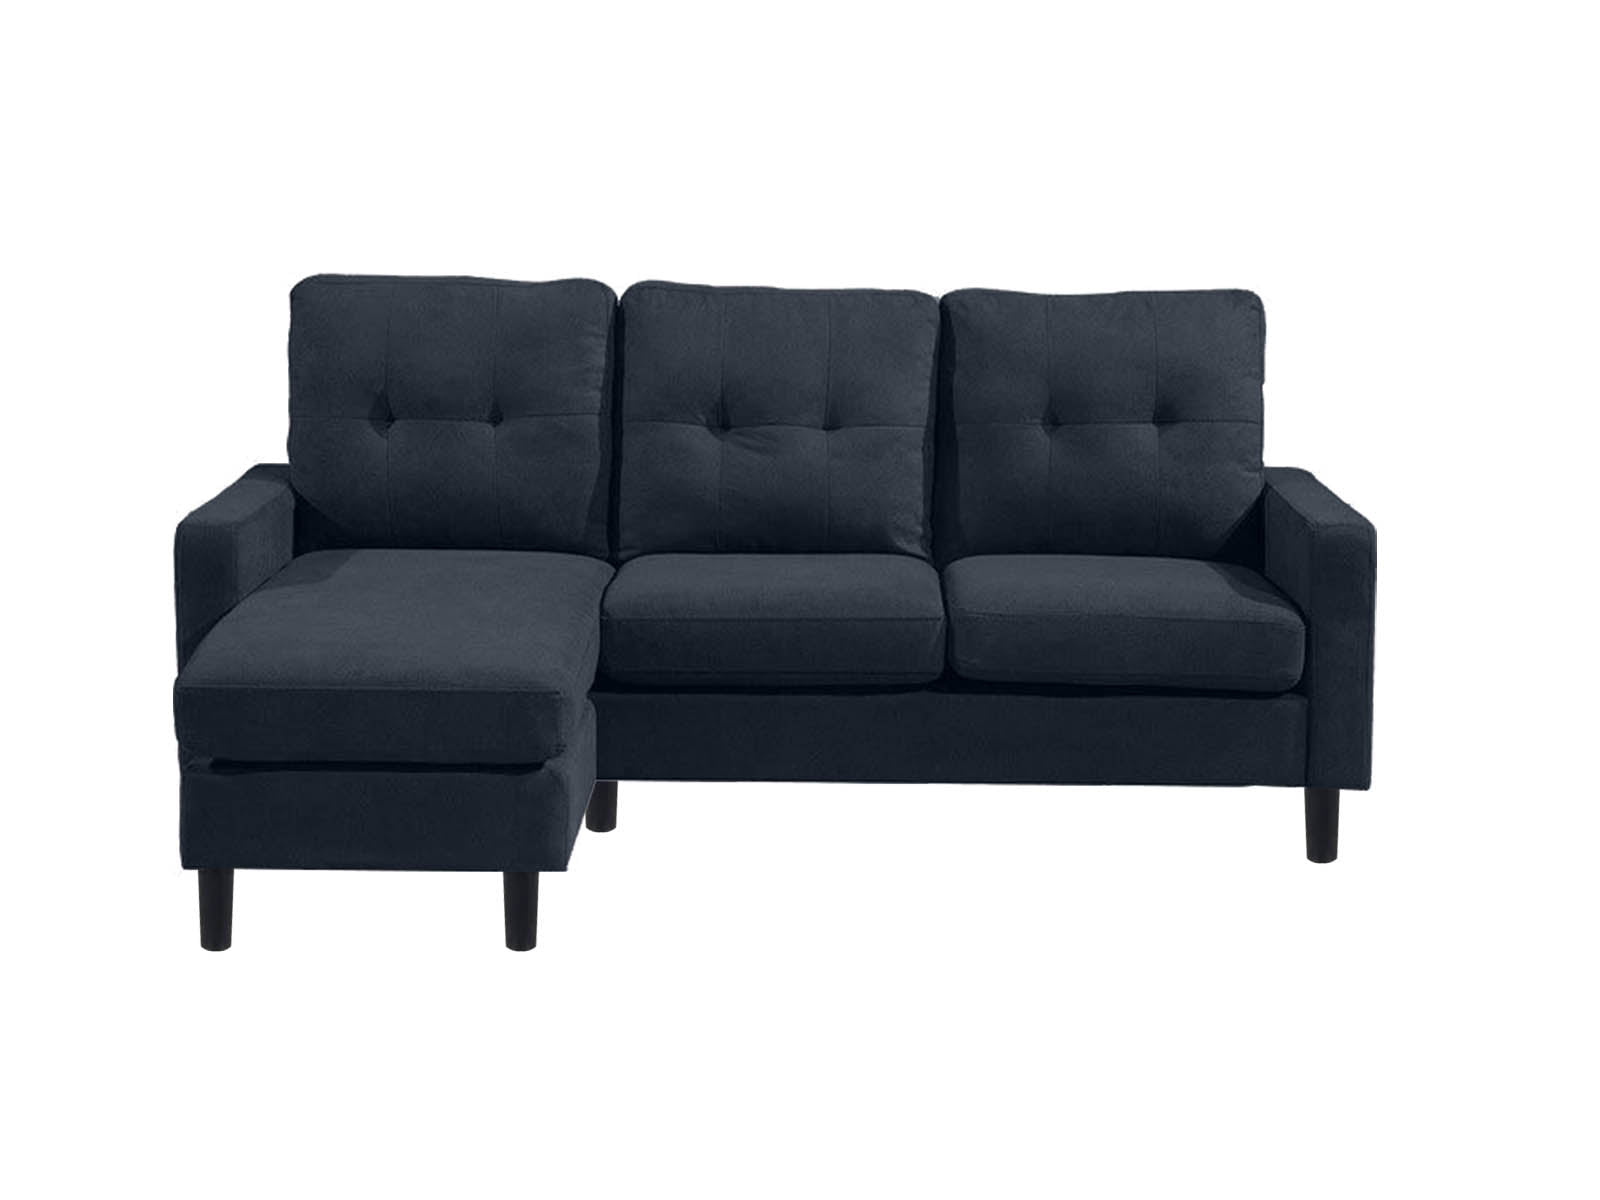 T Hewitt Sectional Sofa